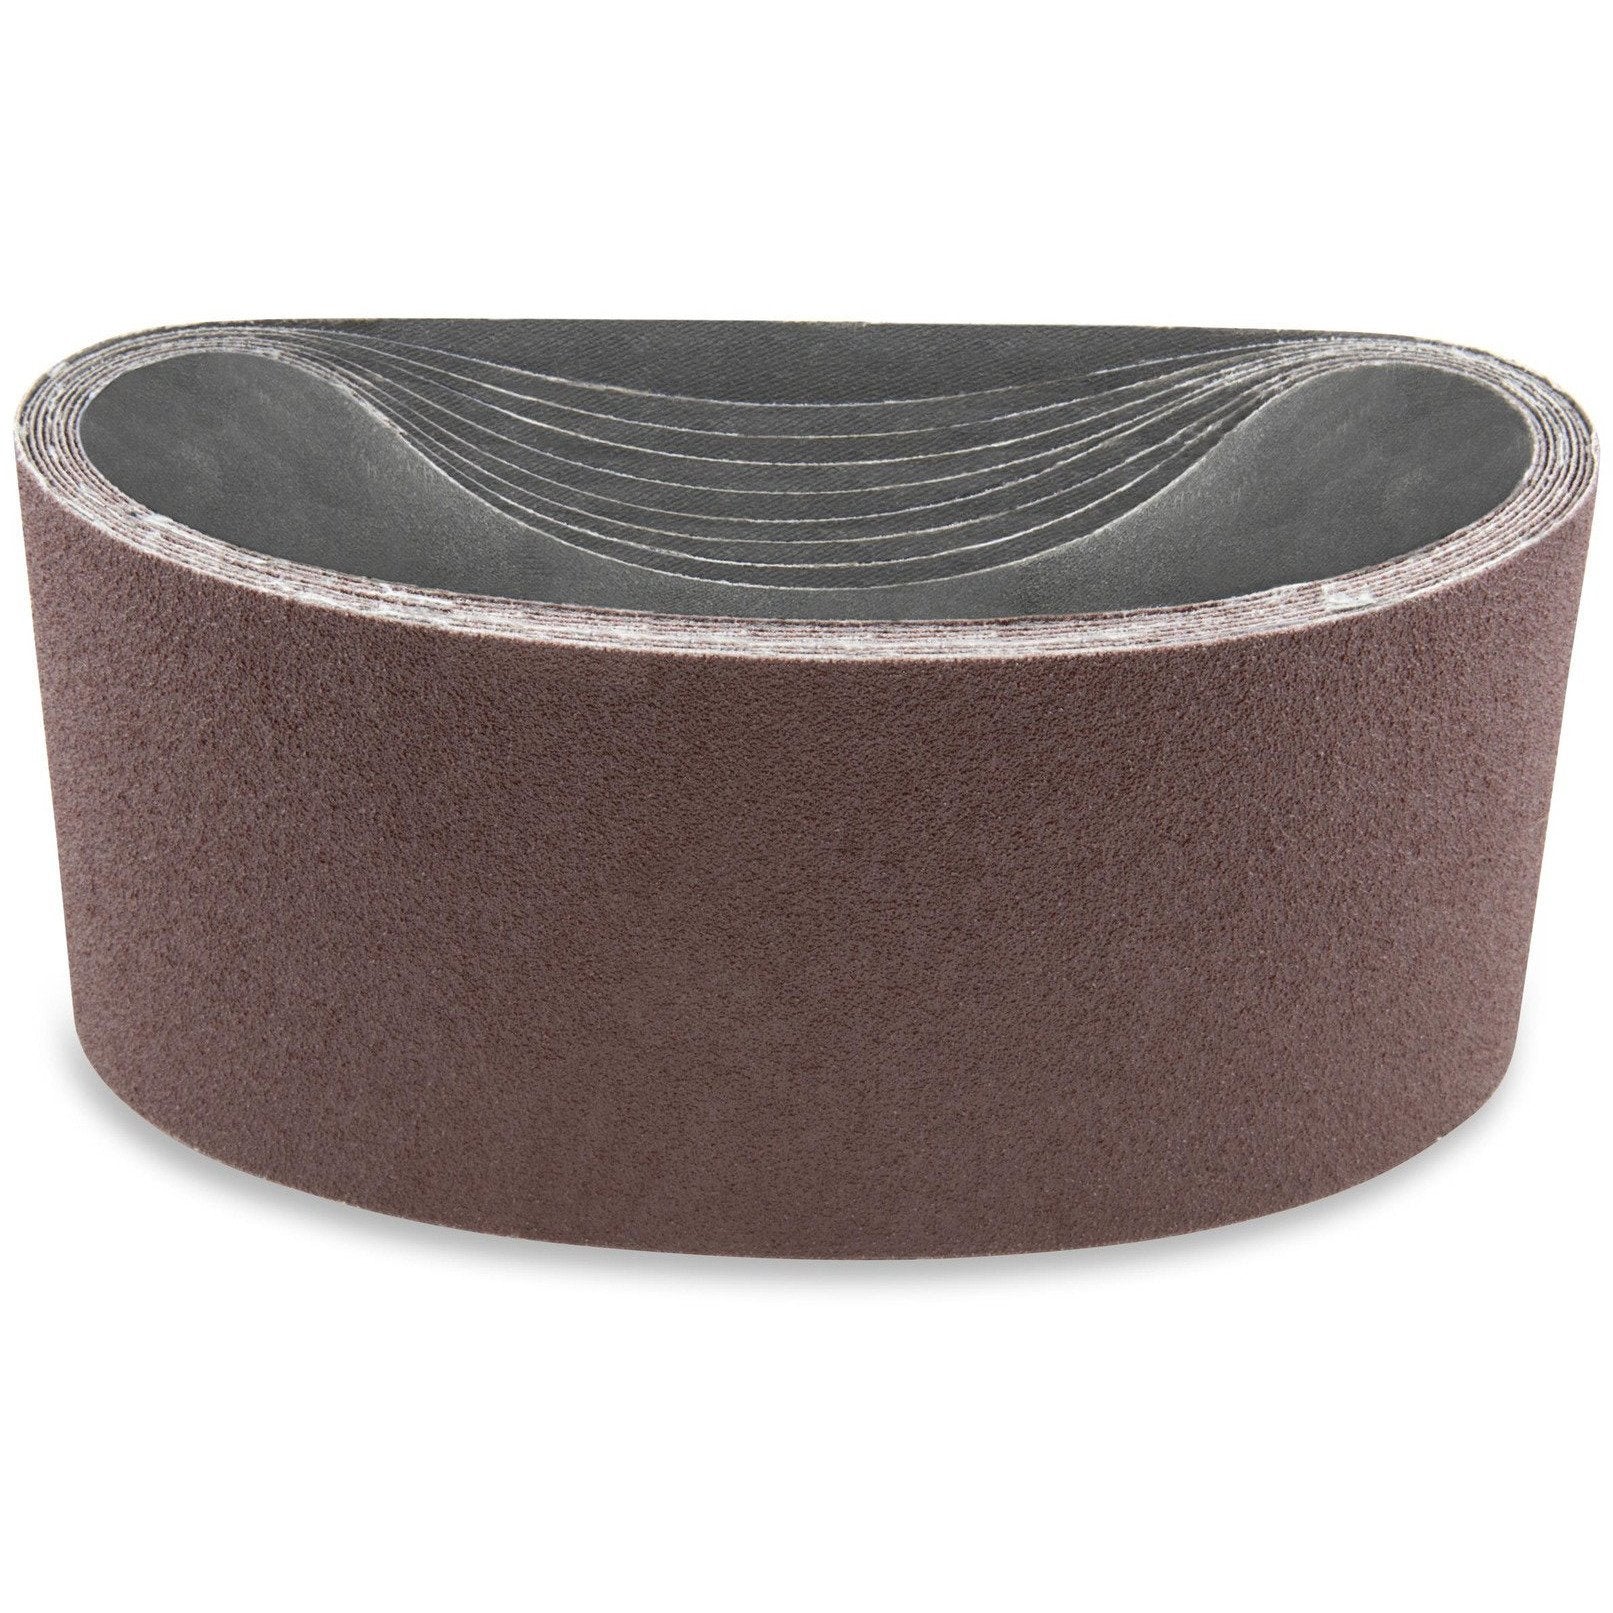 4 X 148 Inch Aluminum Oxide Sanding Belts, 3 Pack - Red Label Abrasives